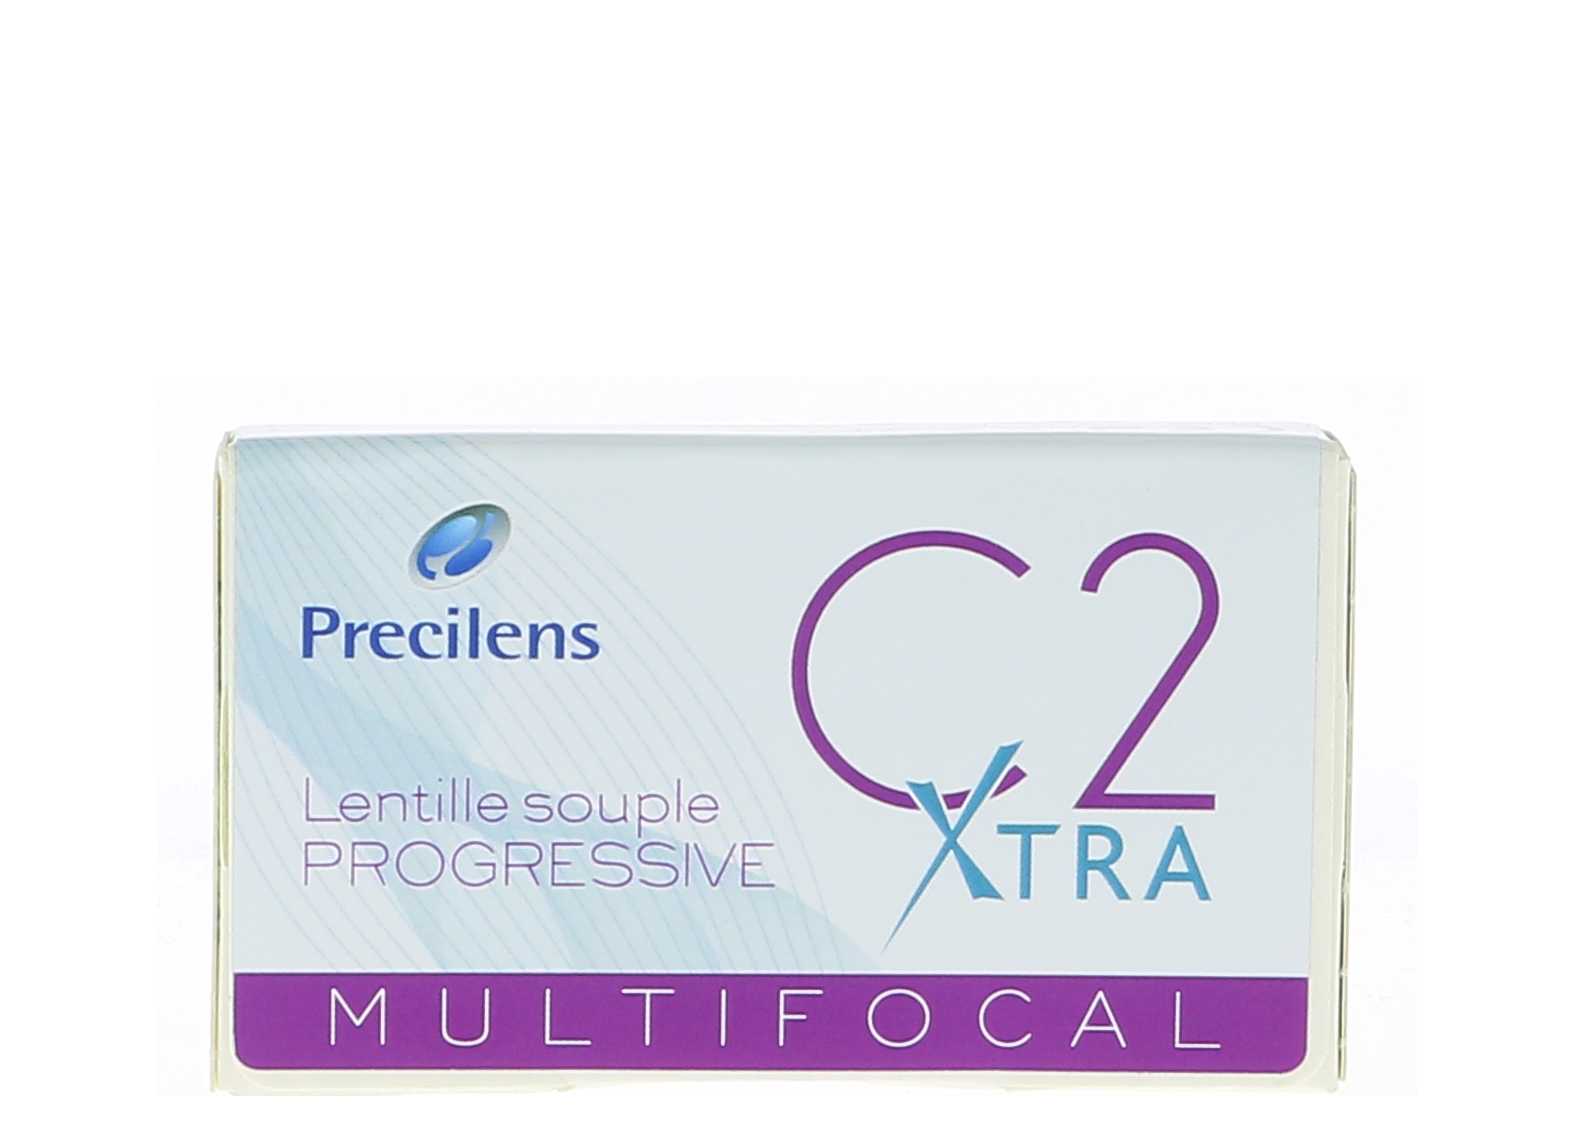  C2 XTRA Multifocal PRECILENS